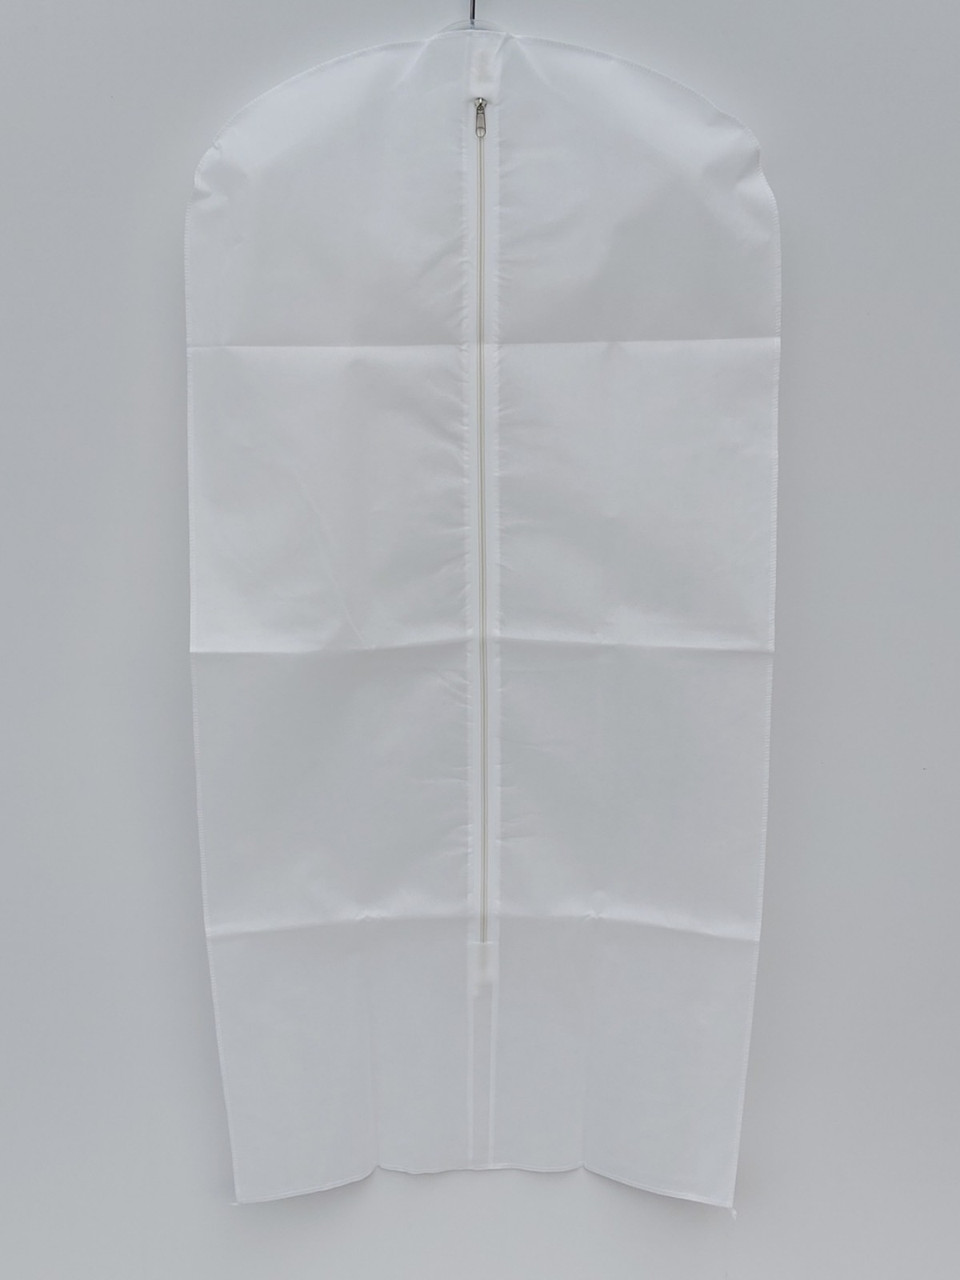 Чохол для зберігання і упаковки одягу на блискавці флізеліновий білого кольору. Розмір 60 см*160 див.